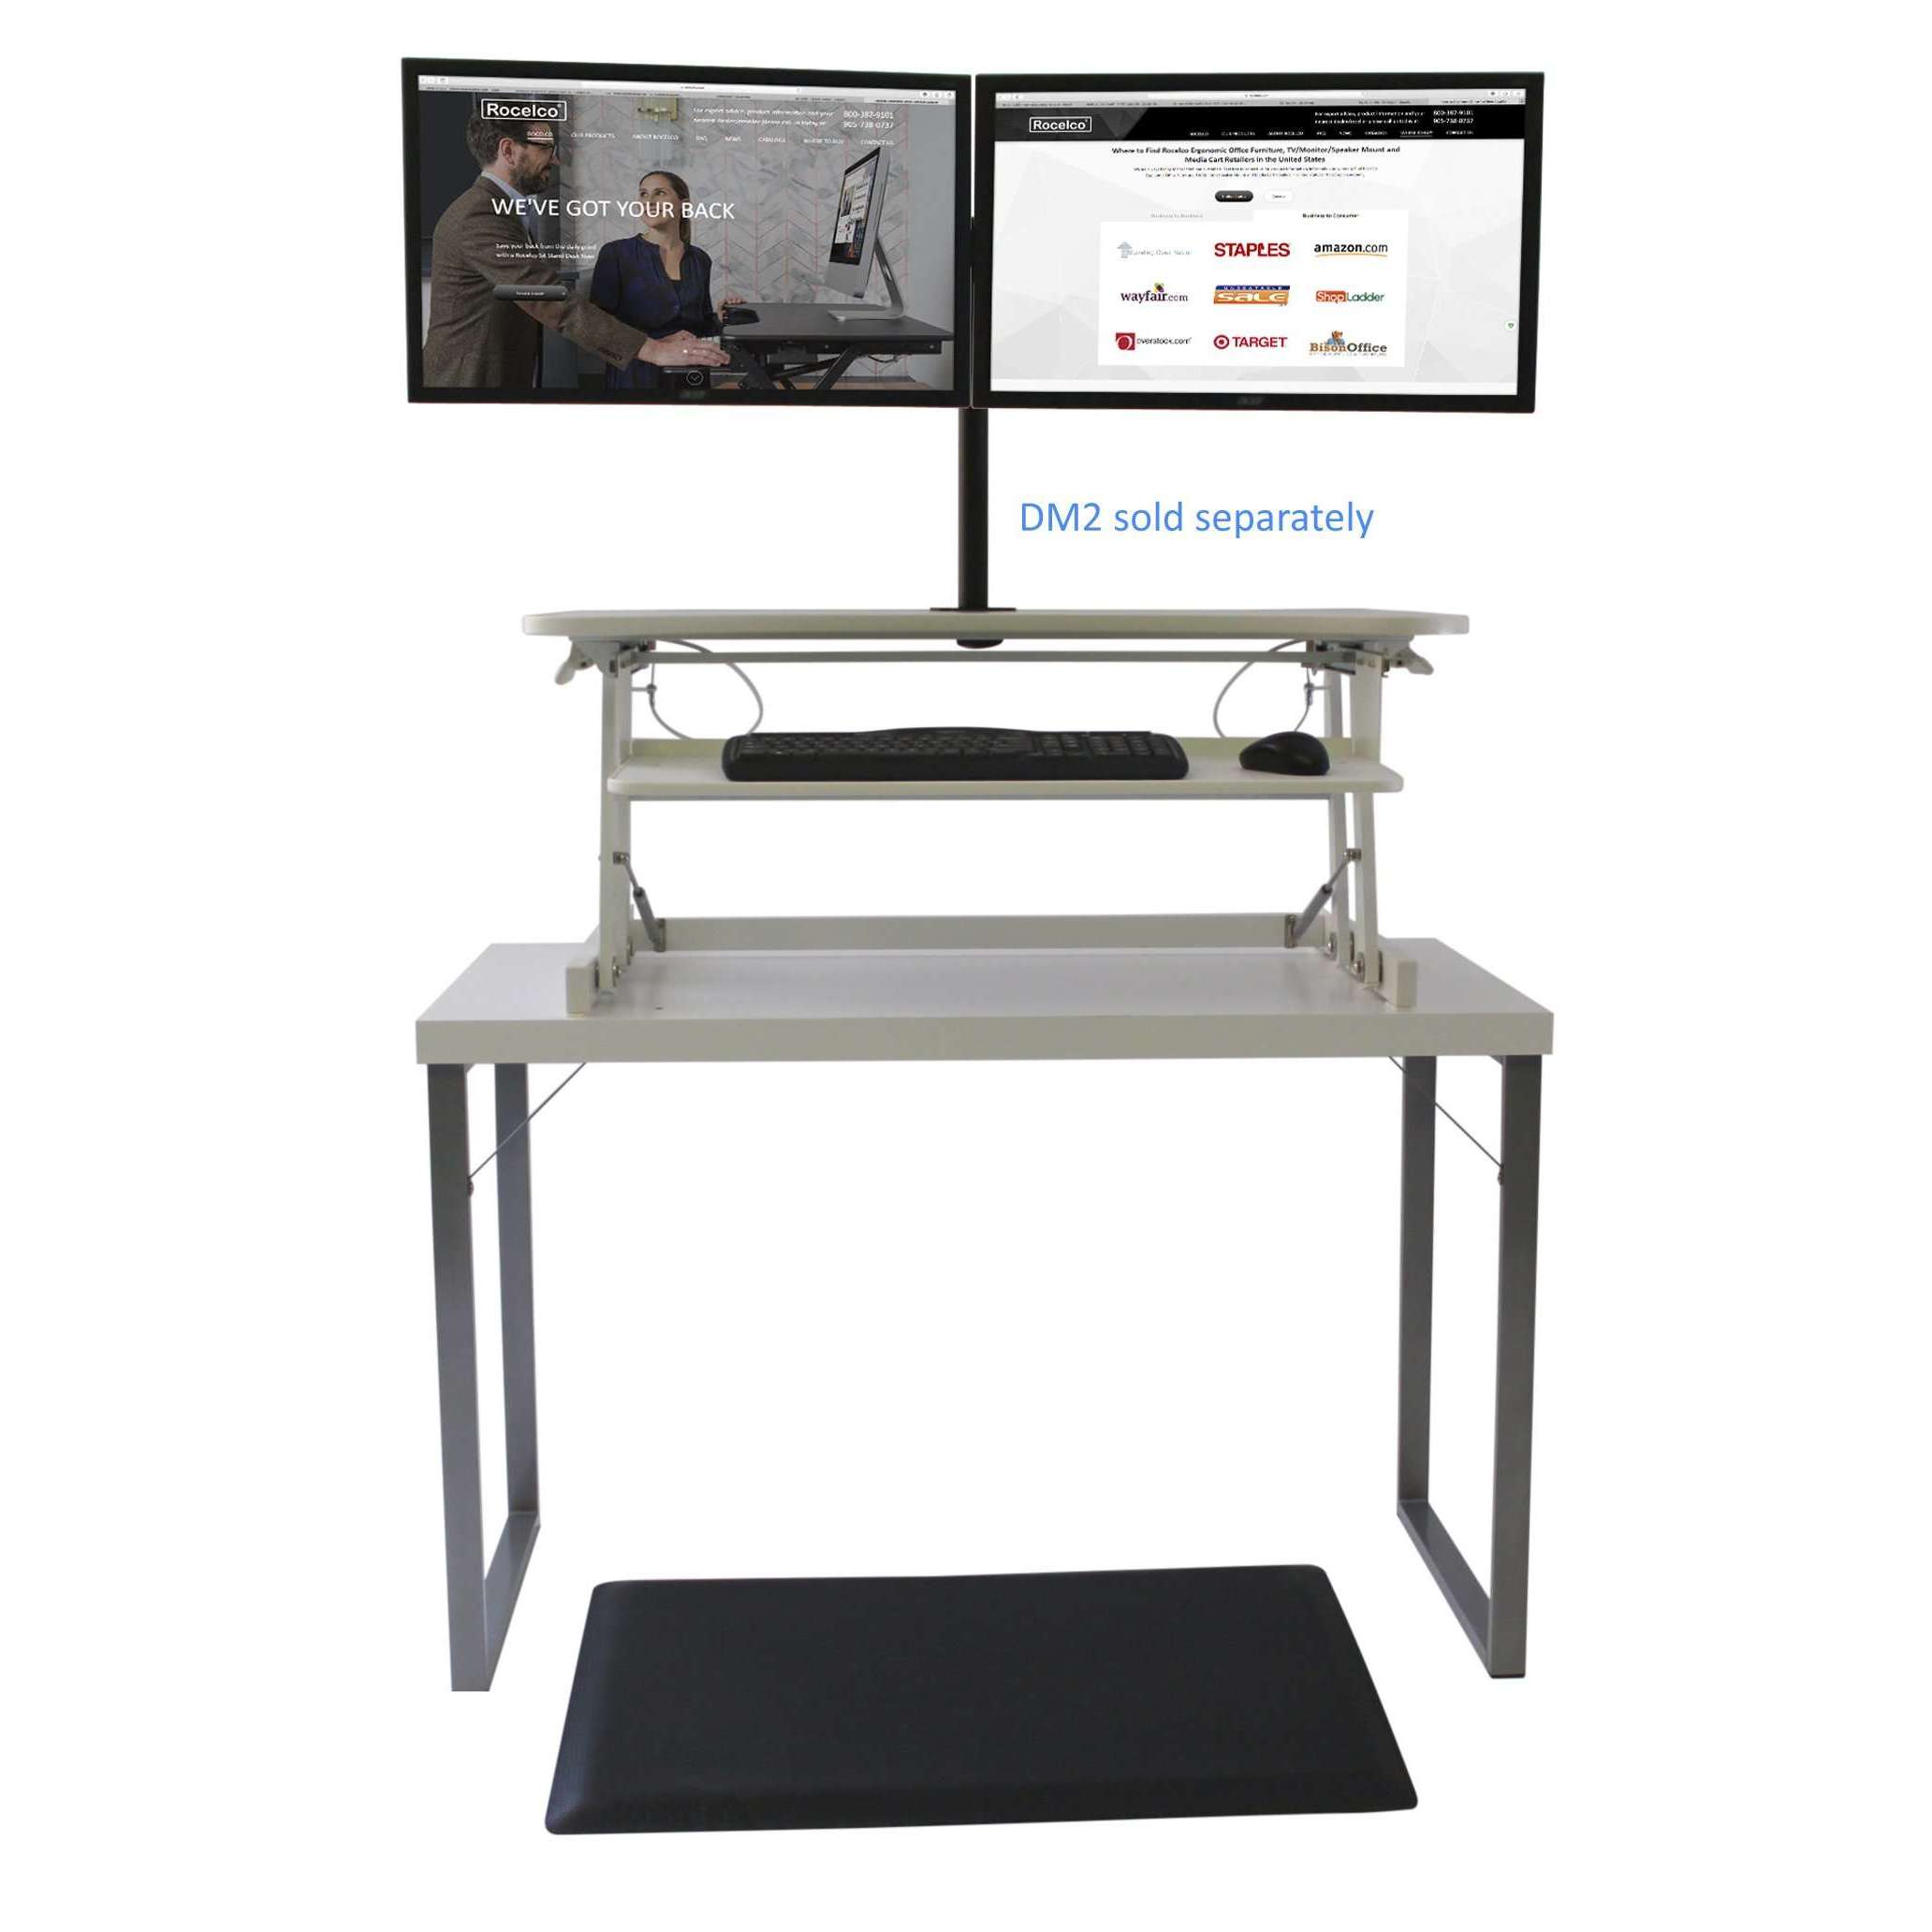 Standing Desk Anti-Fatigue Mat by VersaDesk